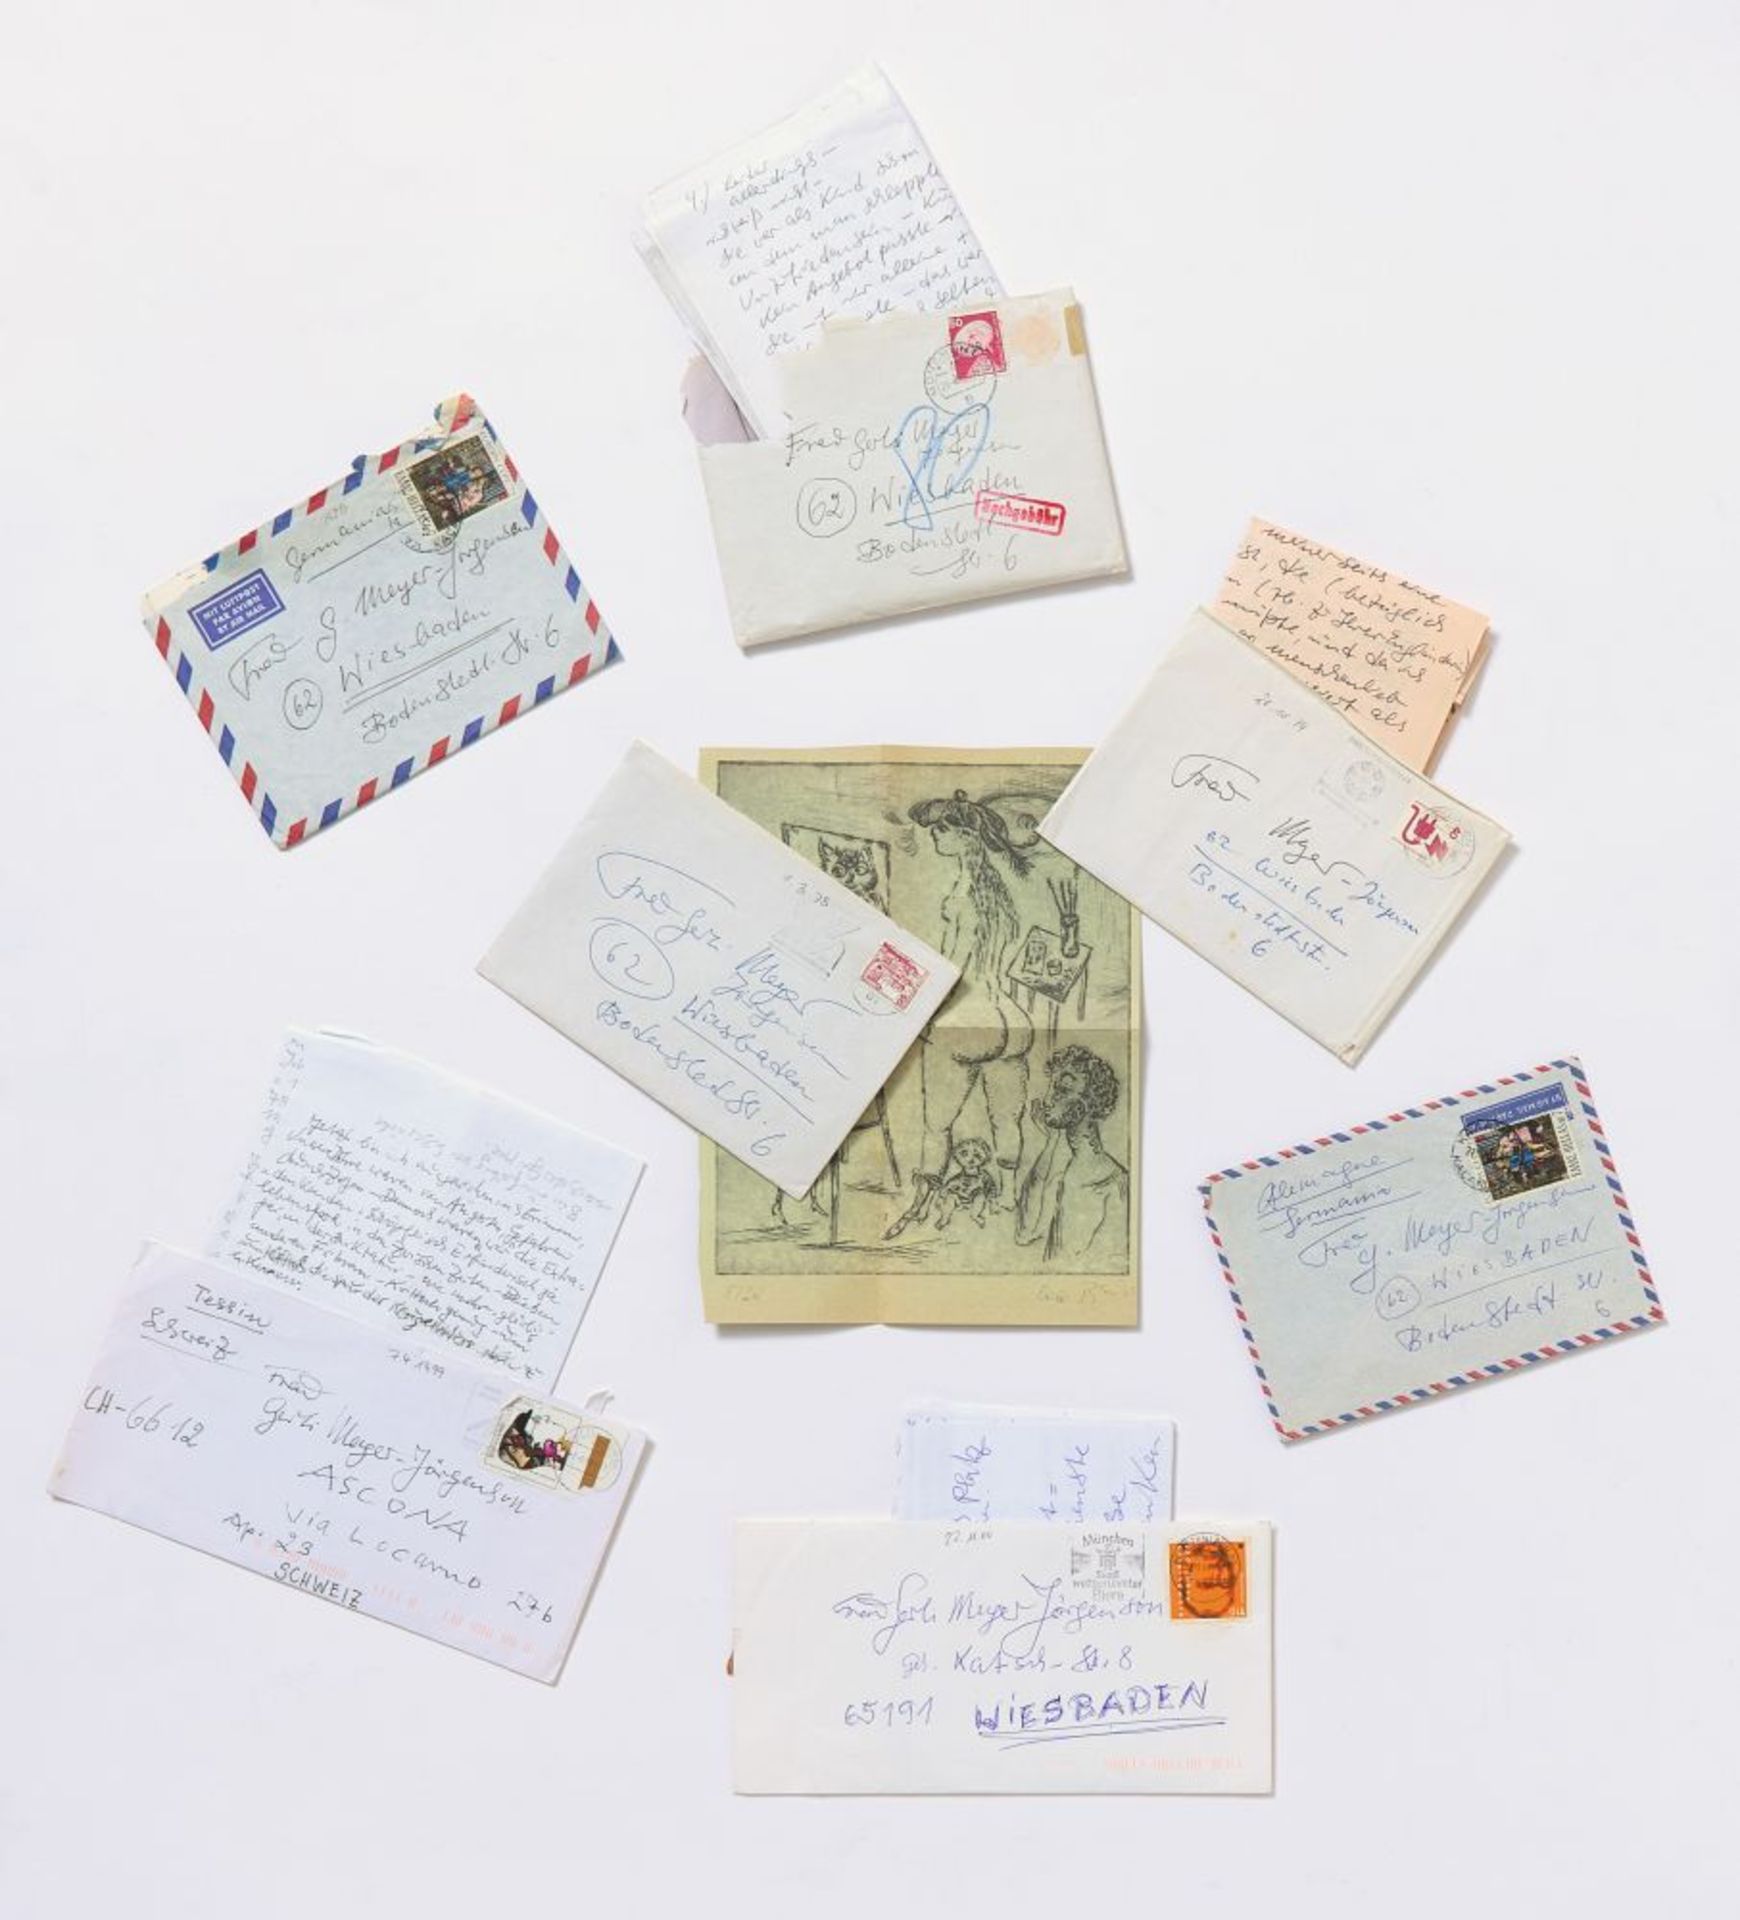 Bele Bachem, 40 eigh. Briefe, Karten, t. mit Zeichnungen. Von ca. 1974 bis um 2003. - An Gertrude Me - Bild 6 aus 12